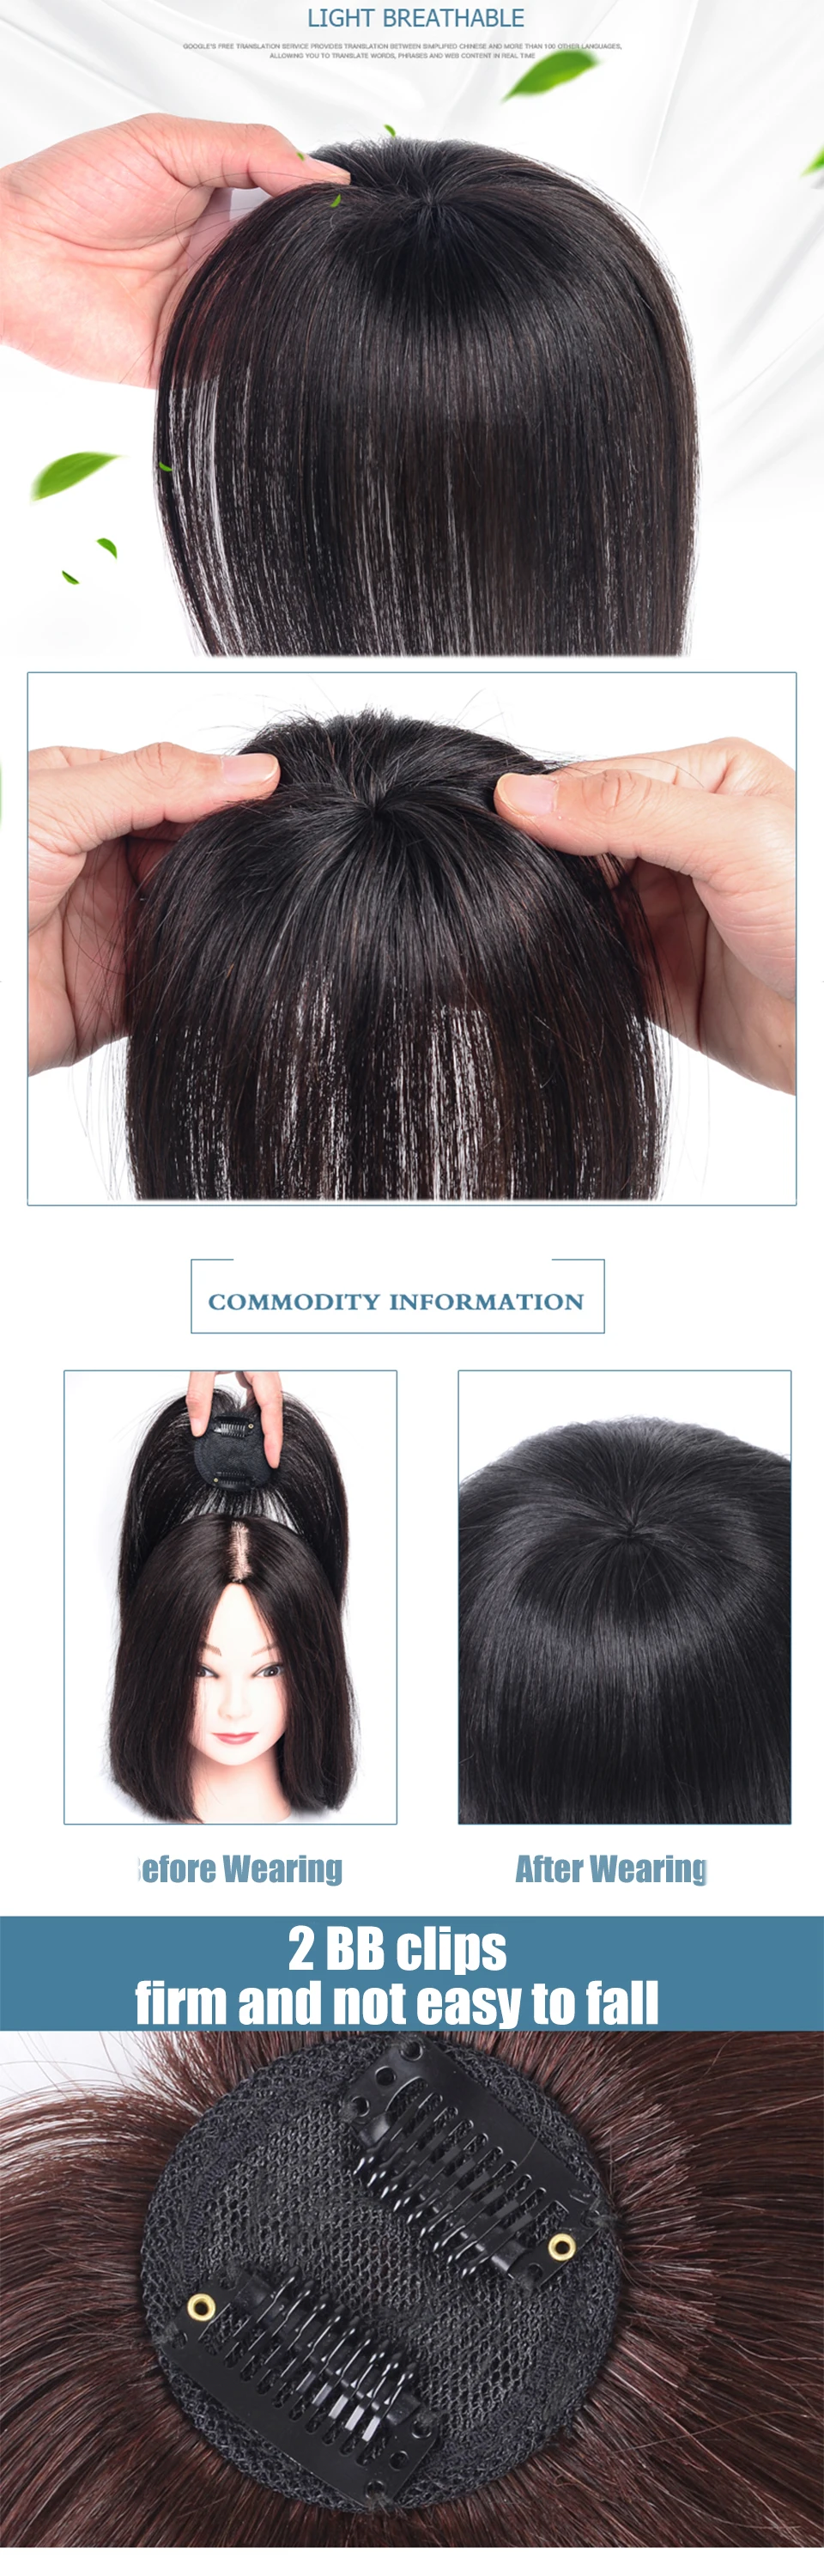 Buqi capa de cabelo sintético com invisibilidade,